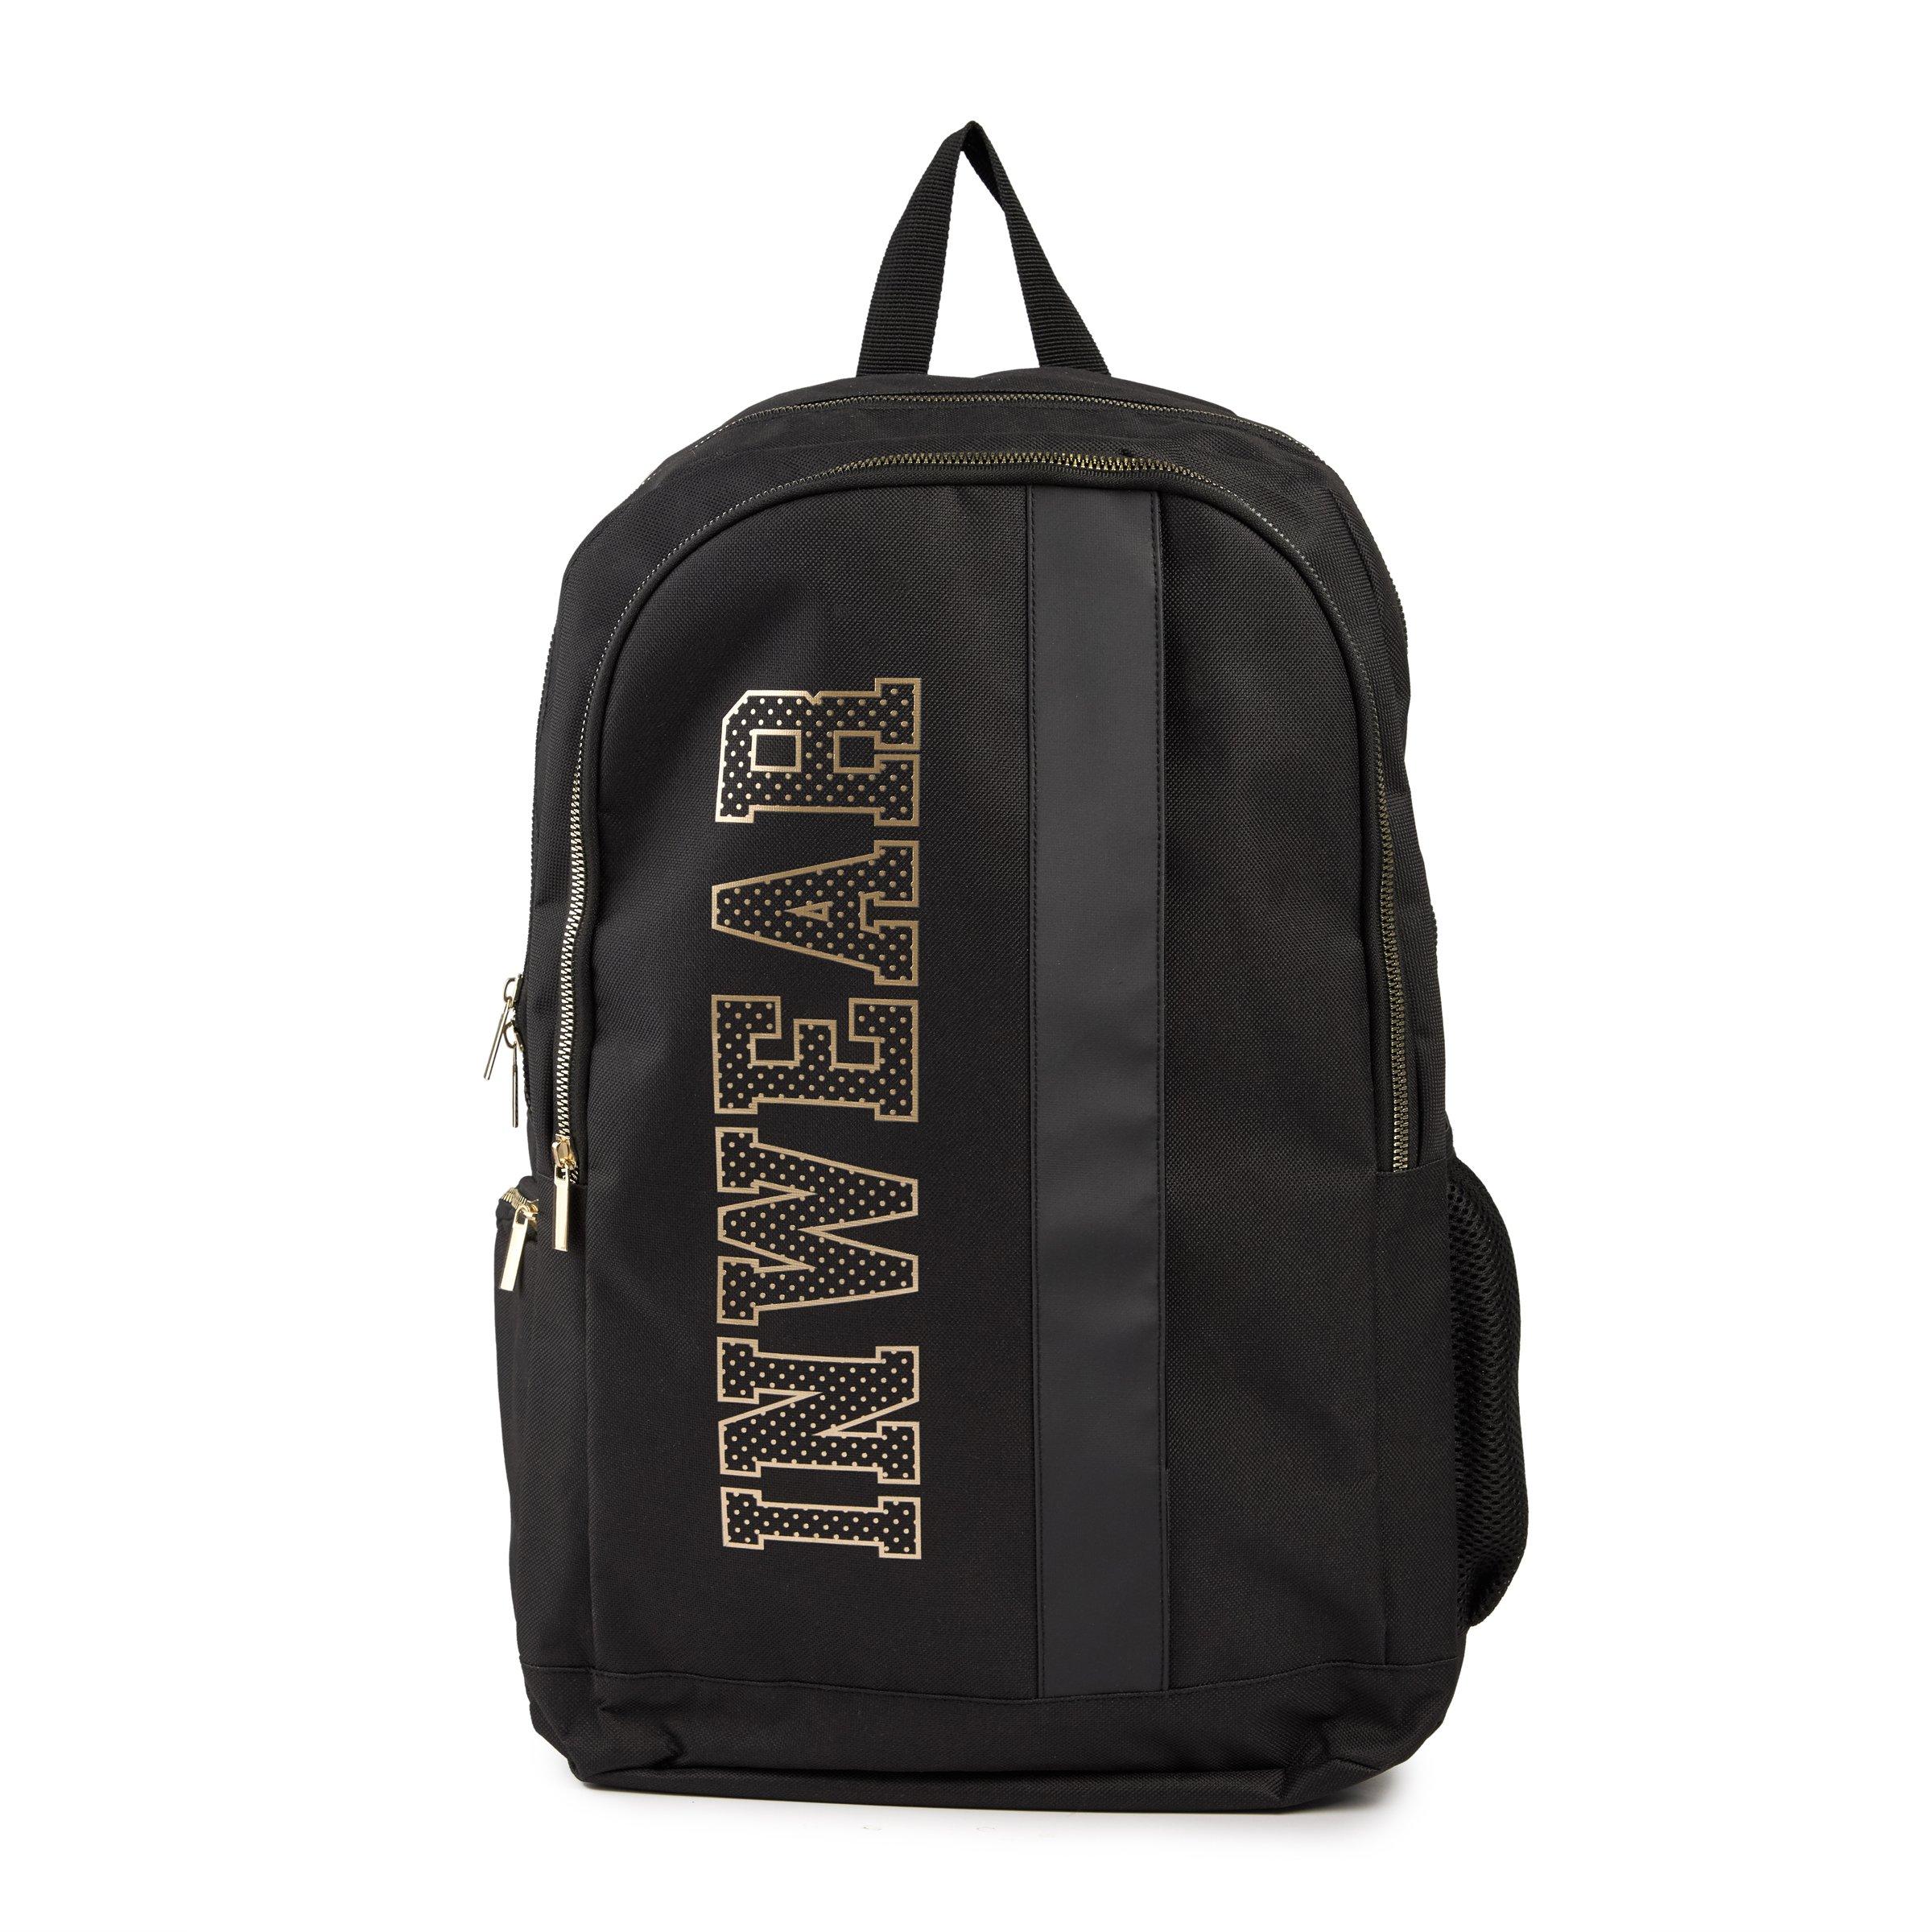 Buy Truworths Black And Gold Backpack Online | Truworths